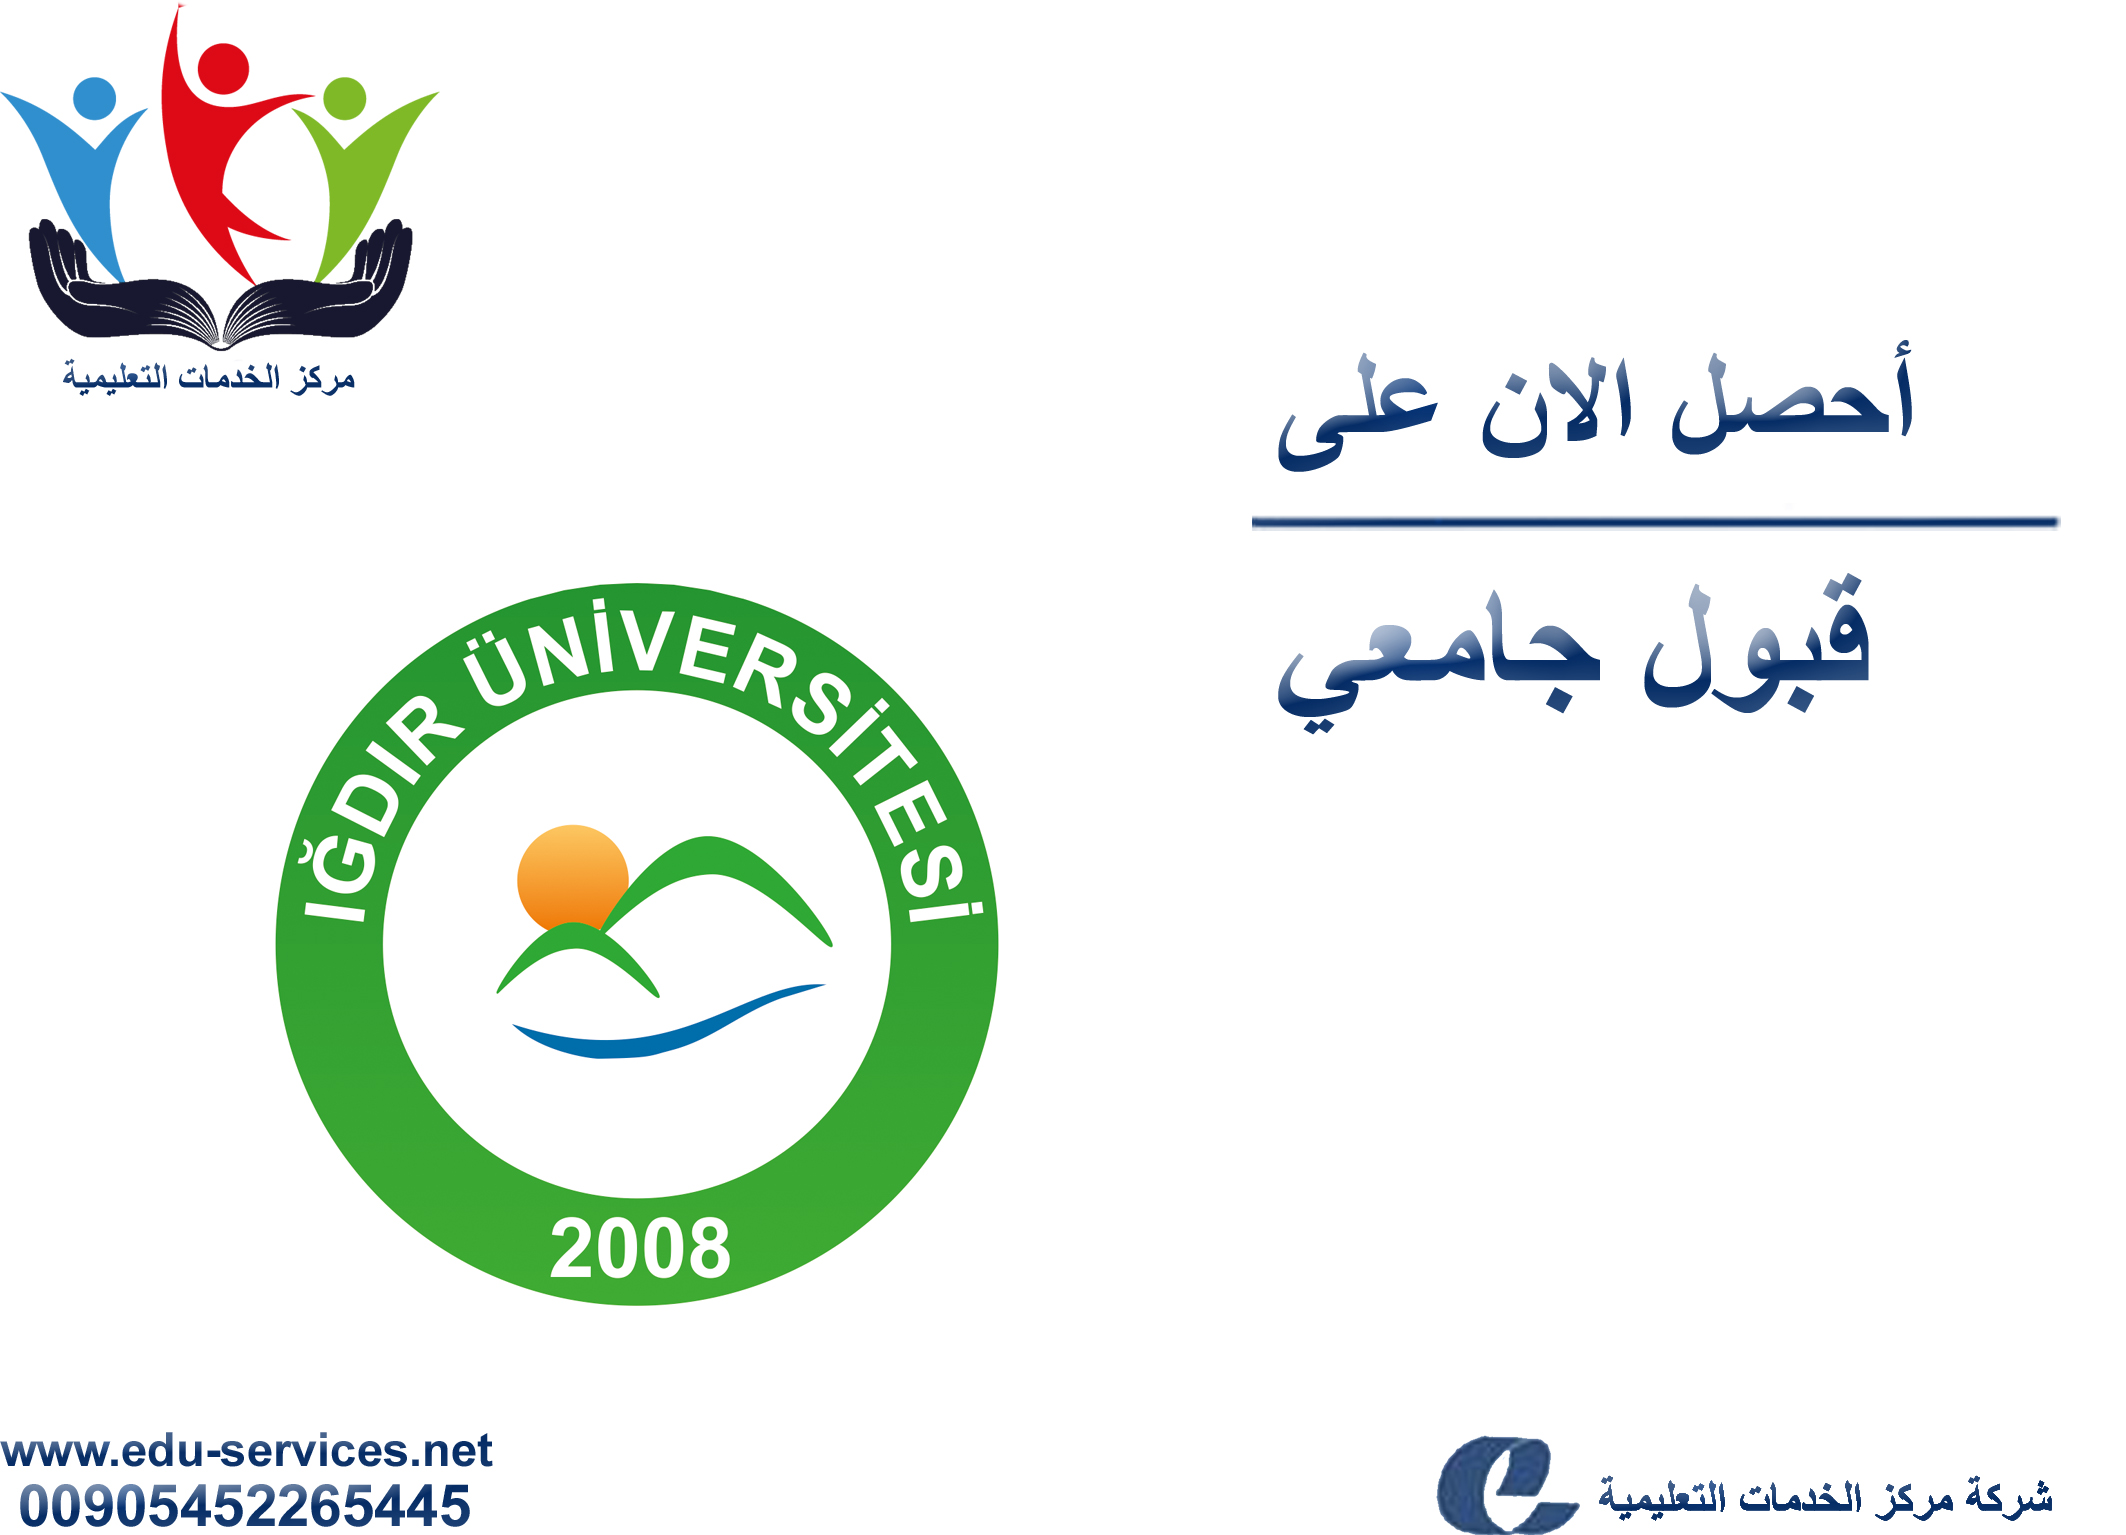 افتتاح التسجيل في جامعة اغدير للعام 2018-2019